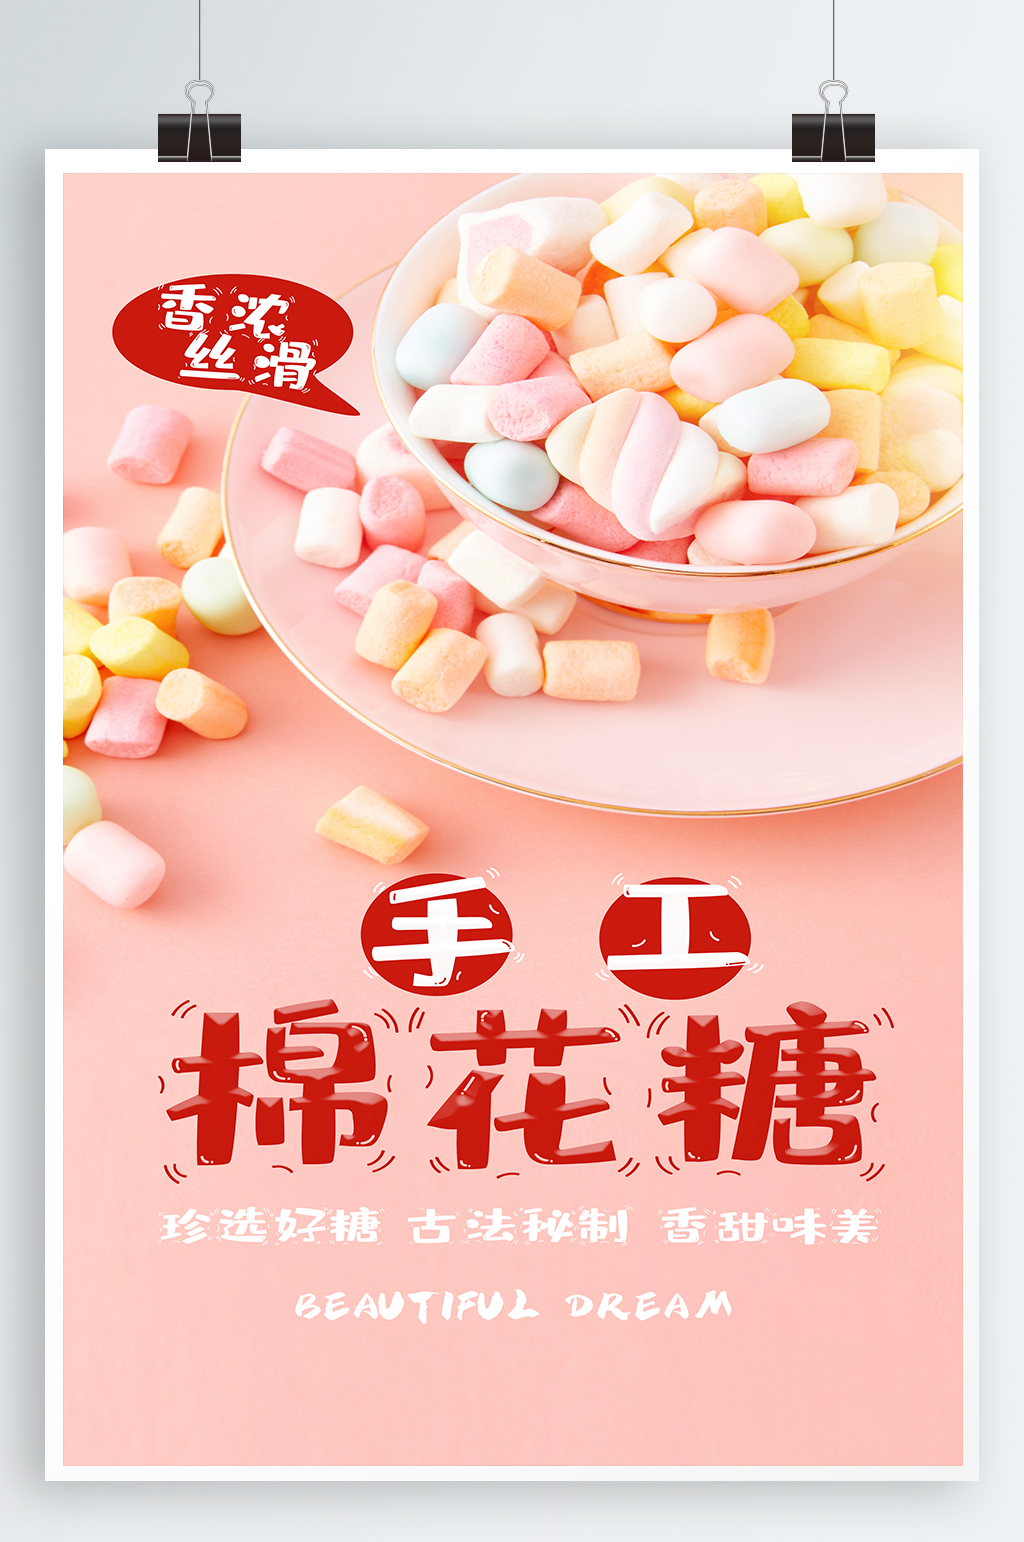 棉花糖美食海报素材免费下载,本作品是由紫妍上传的原创平面广告素材